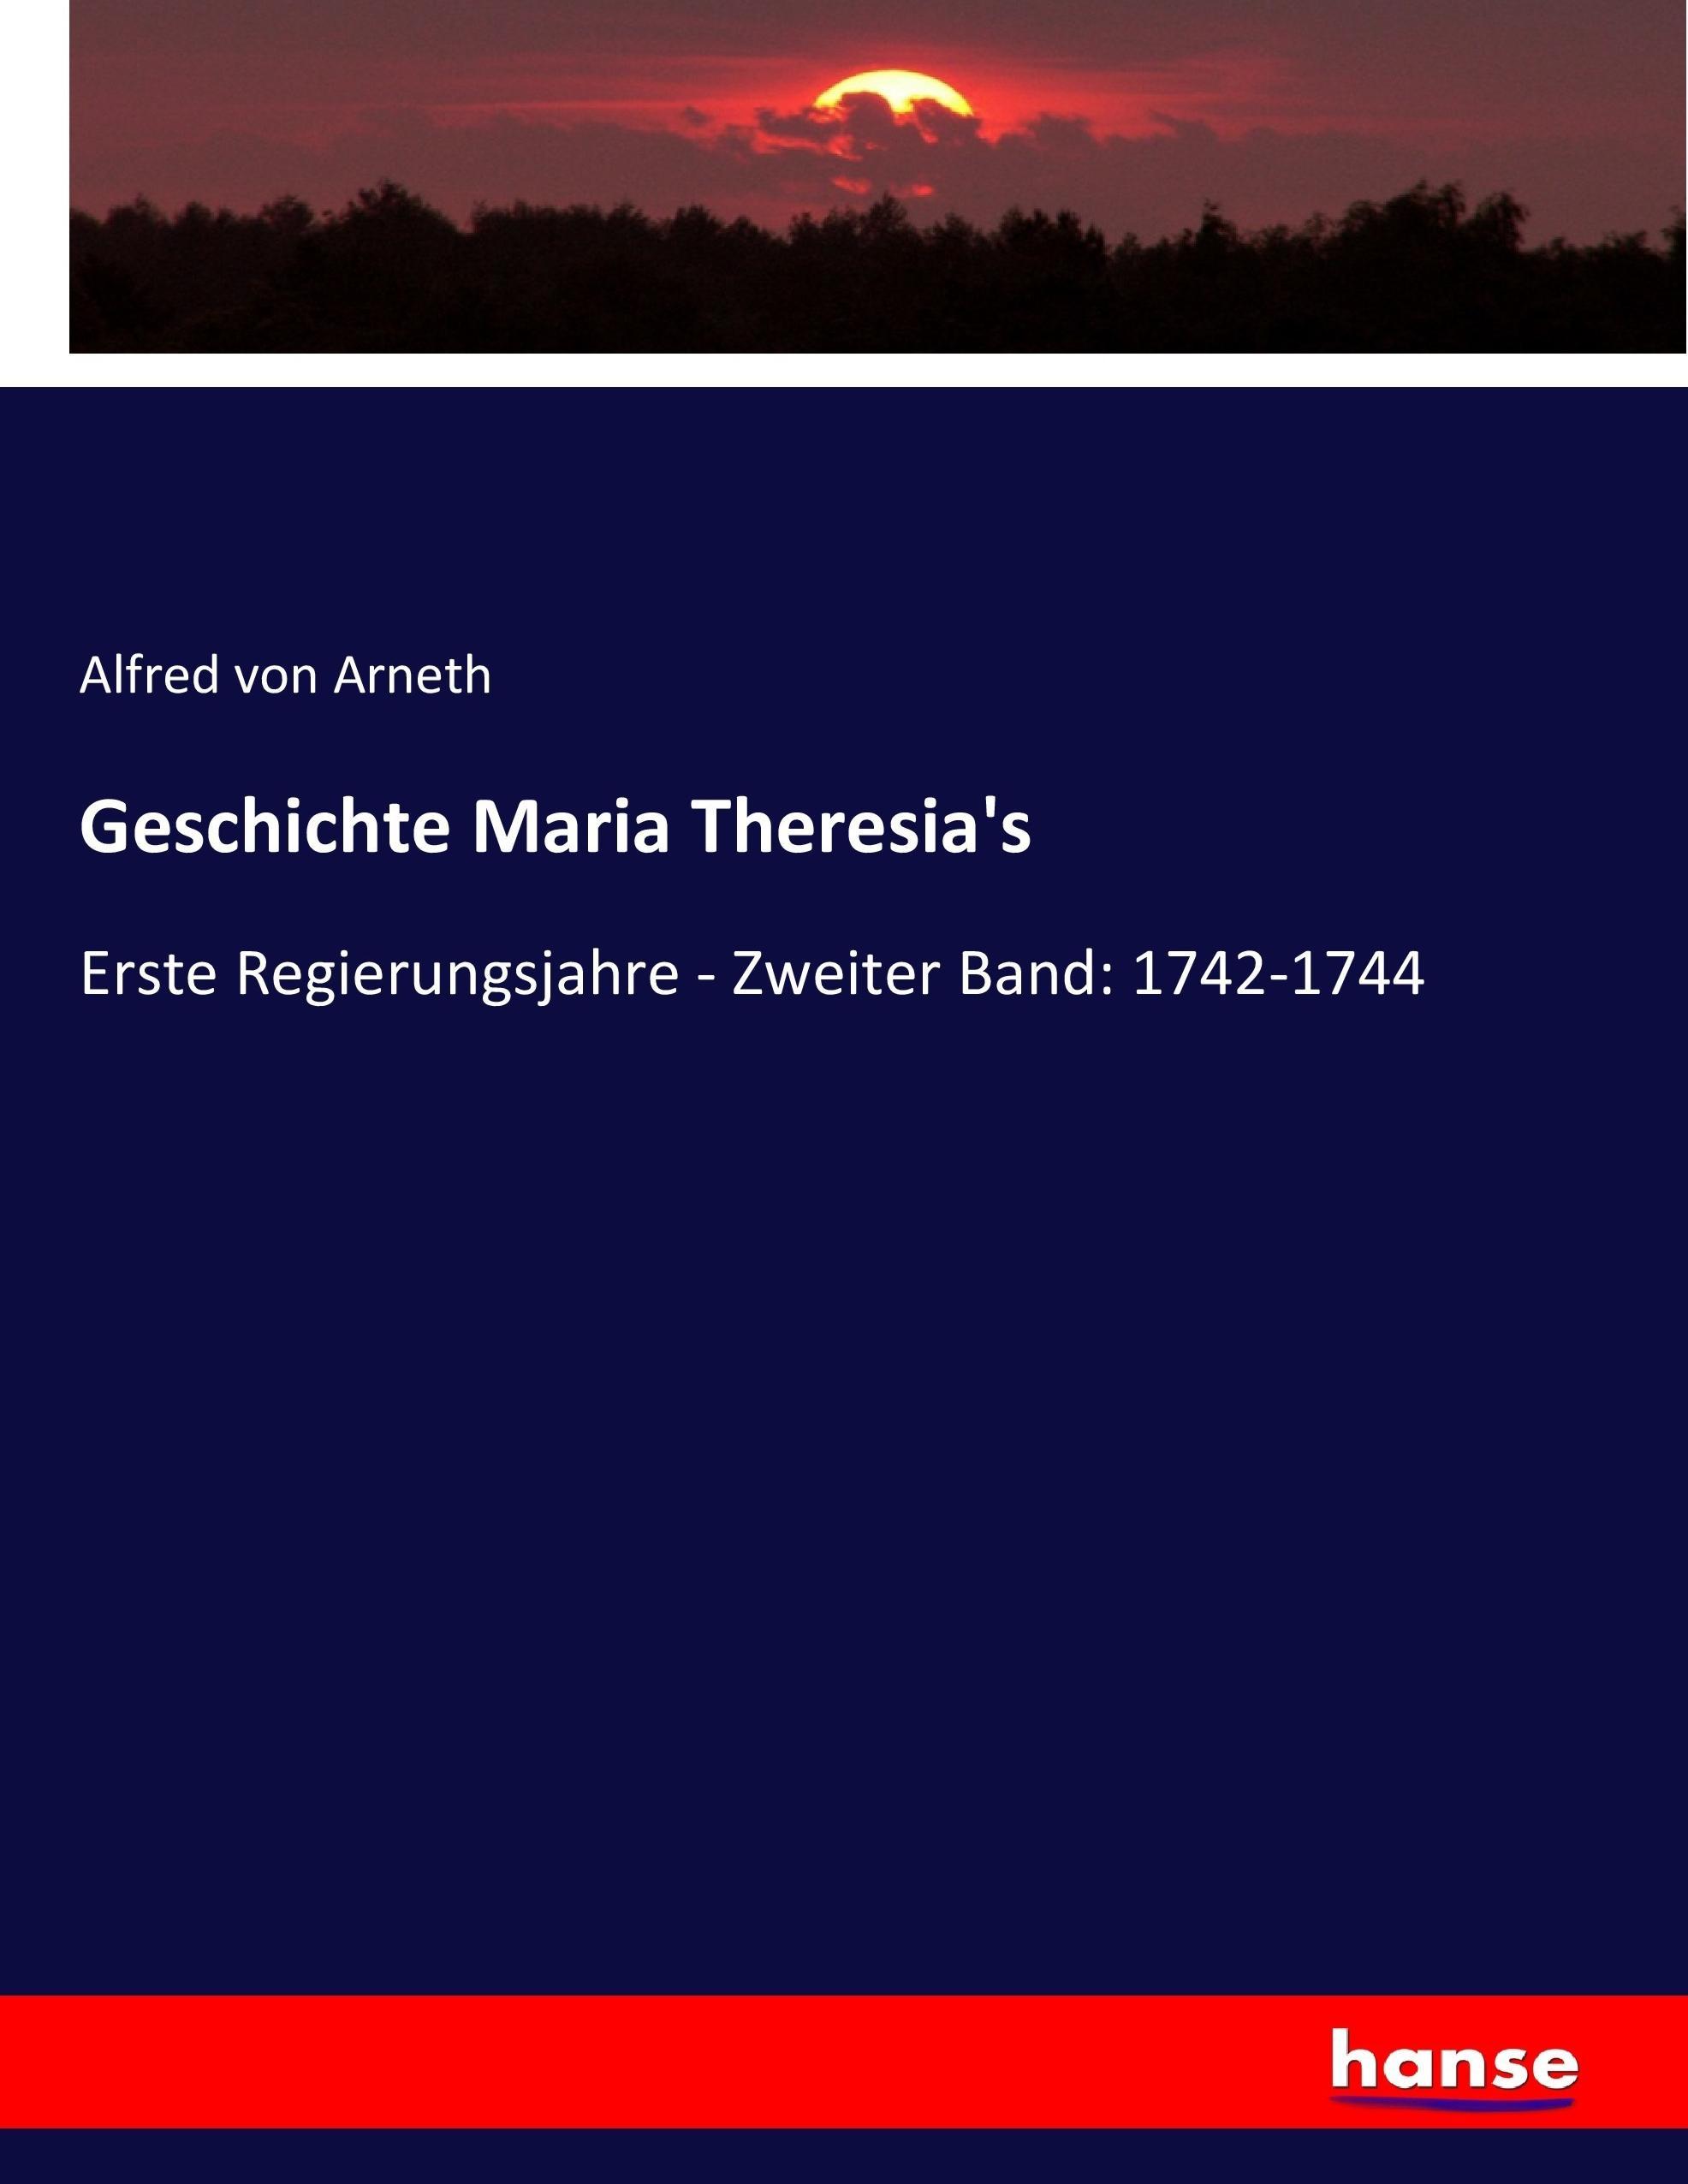 Geschichte Maria Theresia's / Erste Regierungsjahre - Zweiter Band: 1742-1744 / Alfred Von Arneth / Taschenbuch / Paperback / 592 S. / Deutsch / 2017 / hansebooks / EAN 9783743673540 - Arneth, Alfred Von